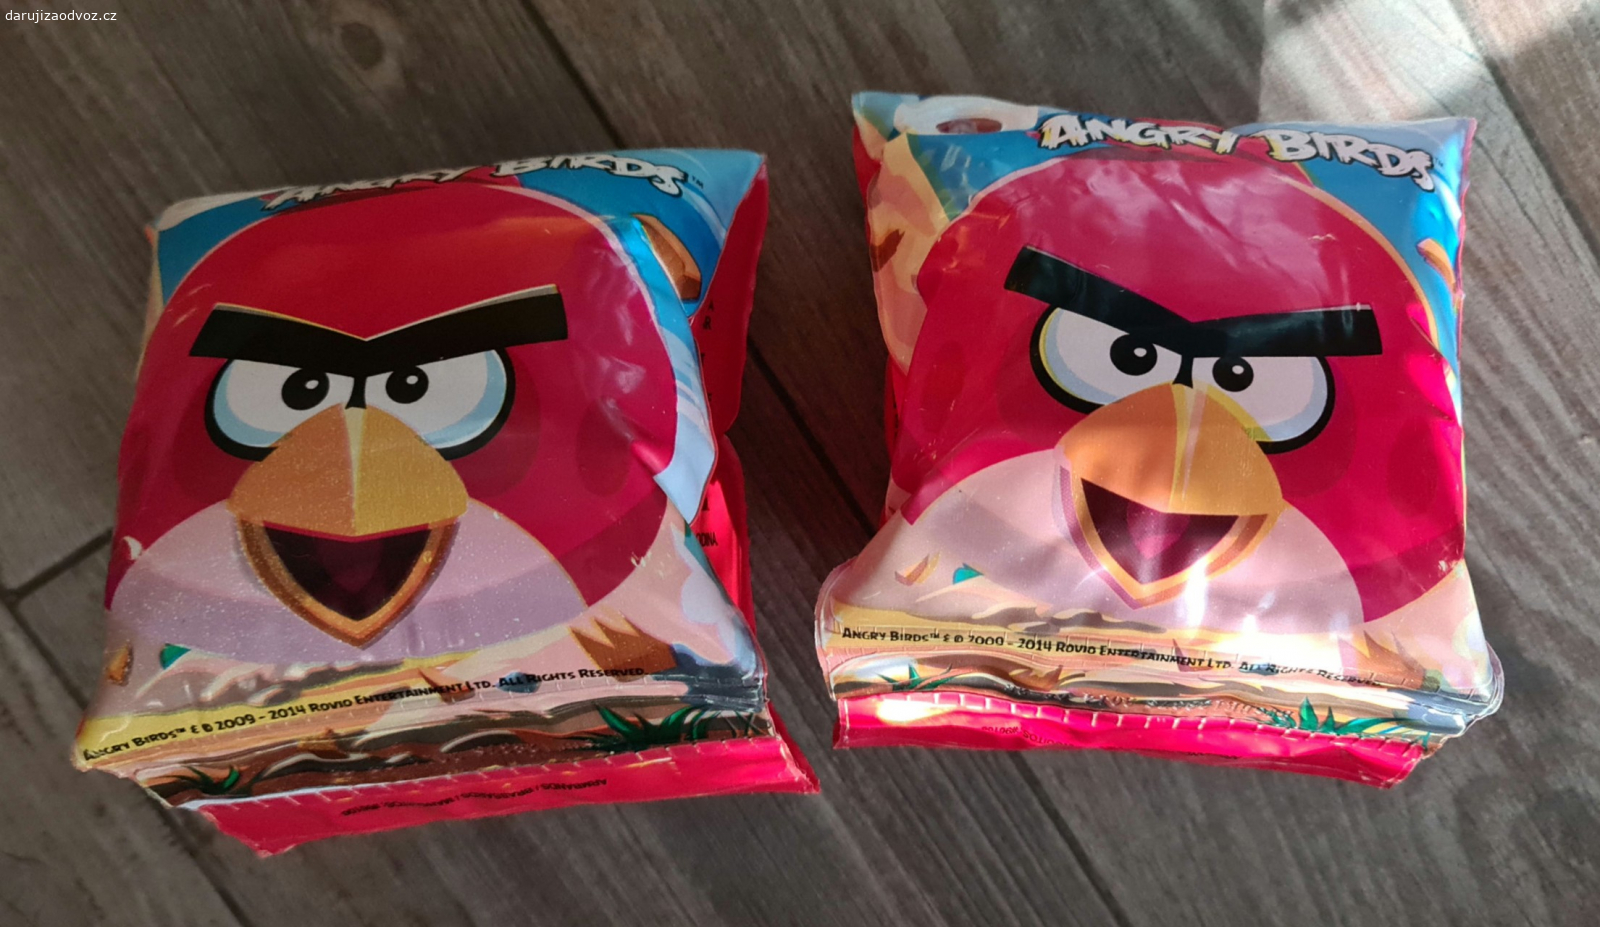 Nafukovací rukávky. Nafukovací rukávky pro děti s motivem Angry Birds. Nevyfukují se, drží takto nafouknuté již několik dní. Pro 18-30kg/3-6 let